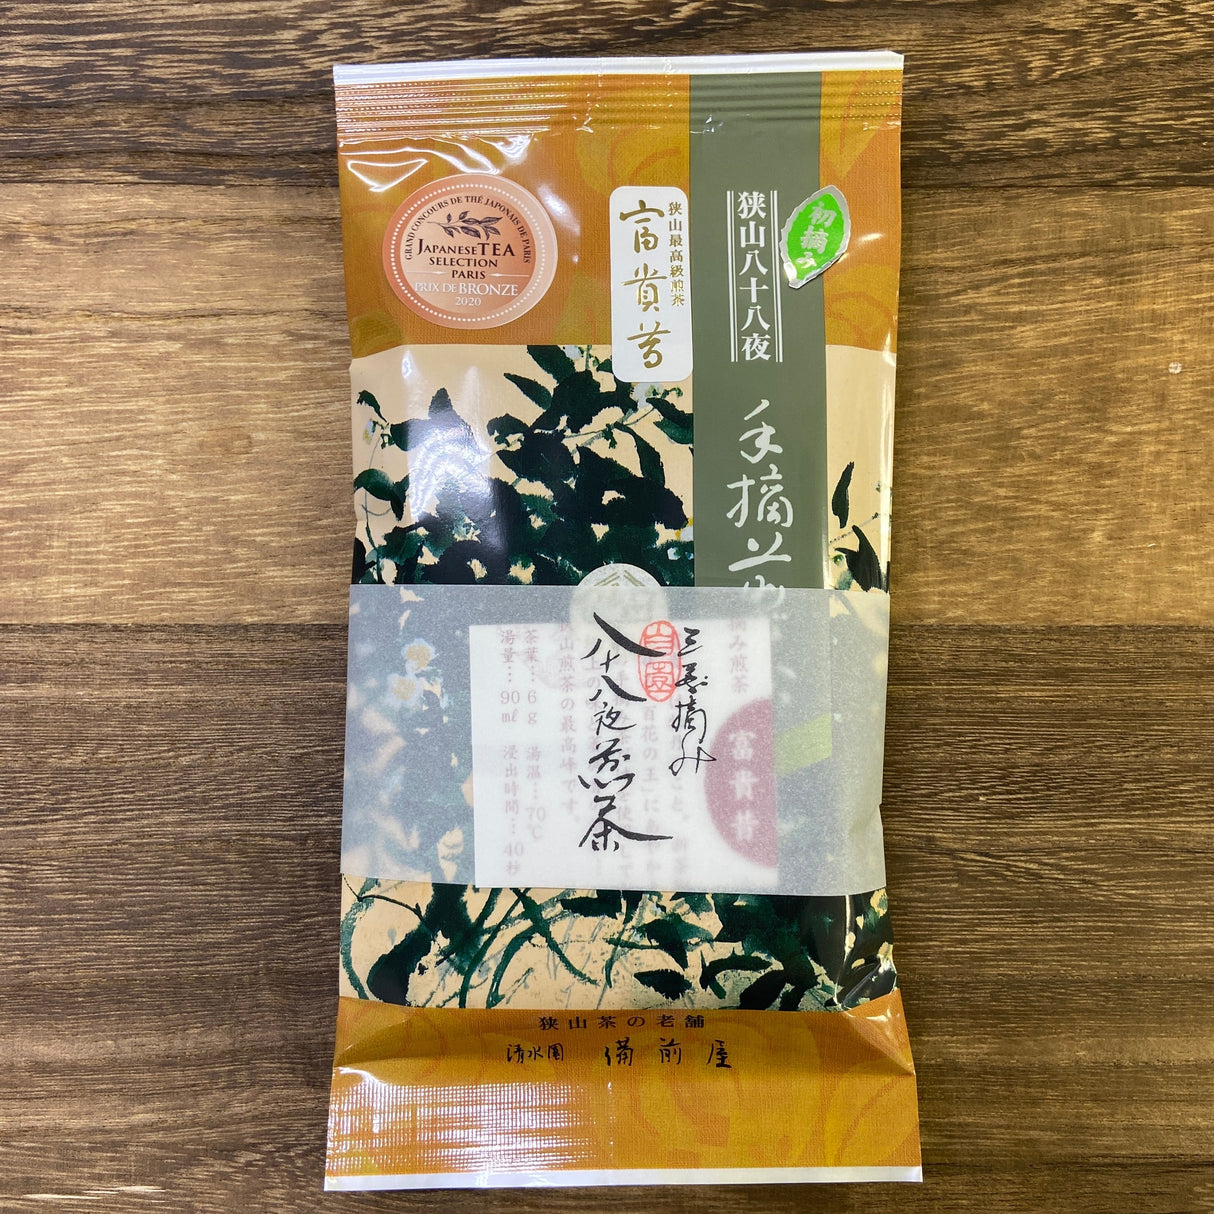 Bizenya: #03 Fukimukashi Blend - Imperial Handpicked Sayama Sencha 最高級手摘み煎茶 富貴昔